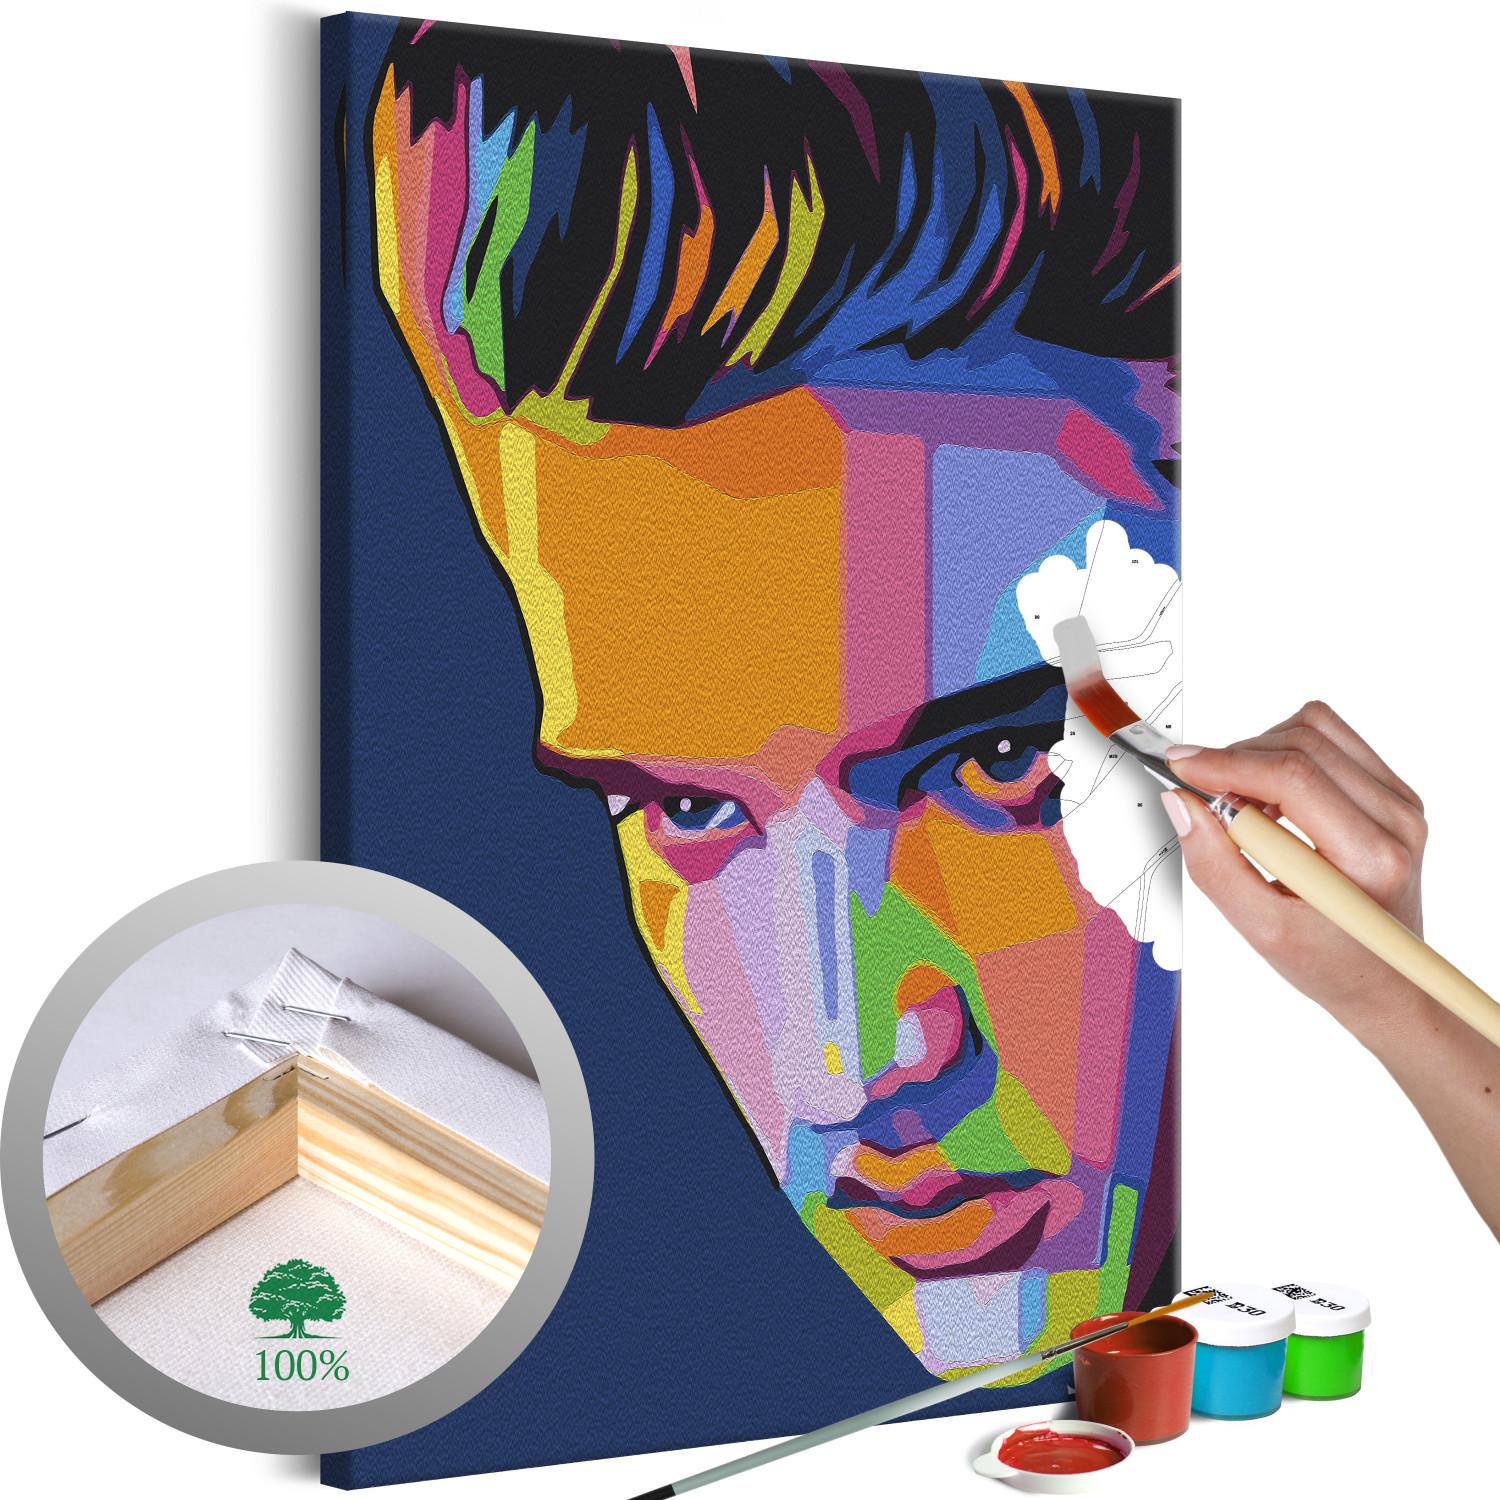 Cuadro numerado para pintar Colourful Elvis